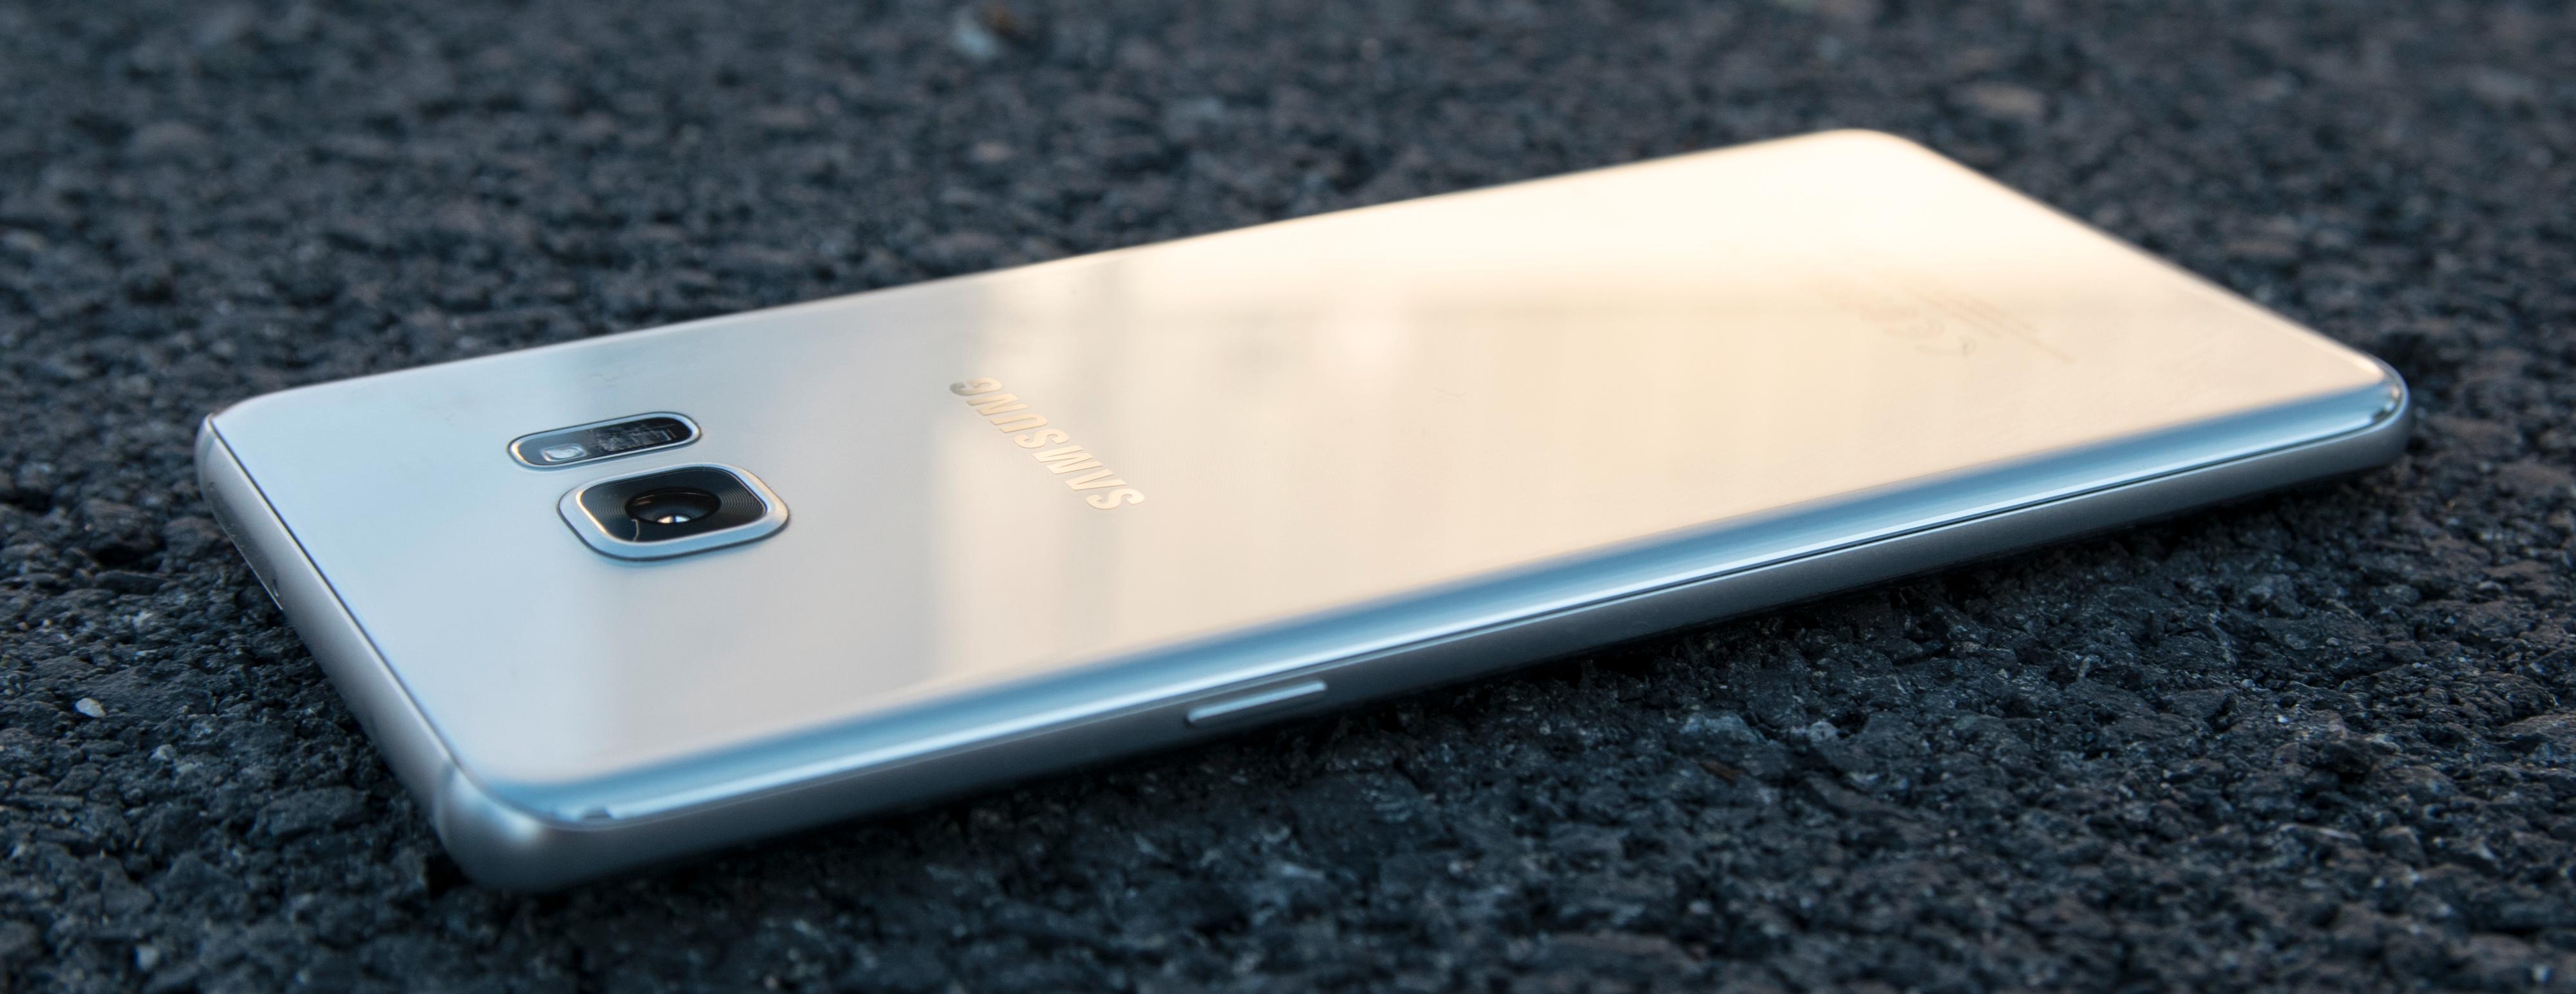 Galaxy Note 7 kommer i en ekstremt blank sølvvariant, som er den vi har brukt mest under testen. Den er kjempeflink til å samle fingeravtrykk, men heldigvis er den enkel å pusse ren igjen med et hurtig sveip over jakken eller buksen.